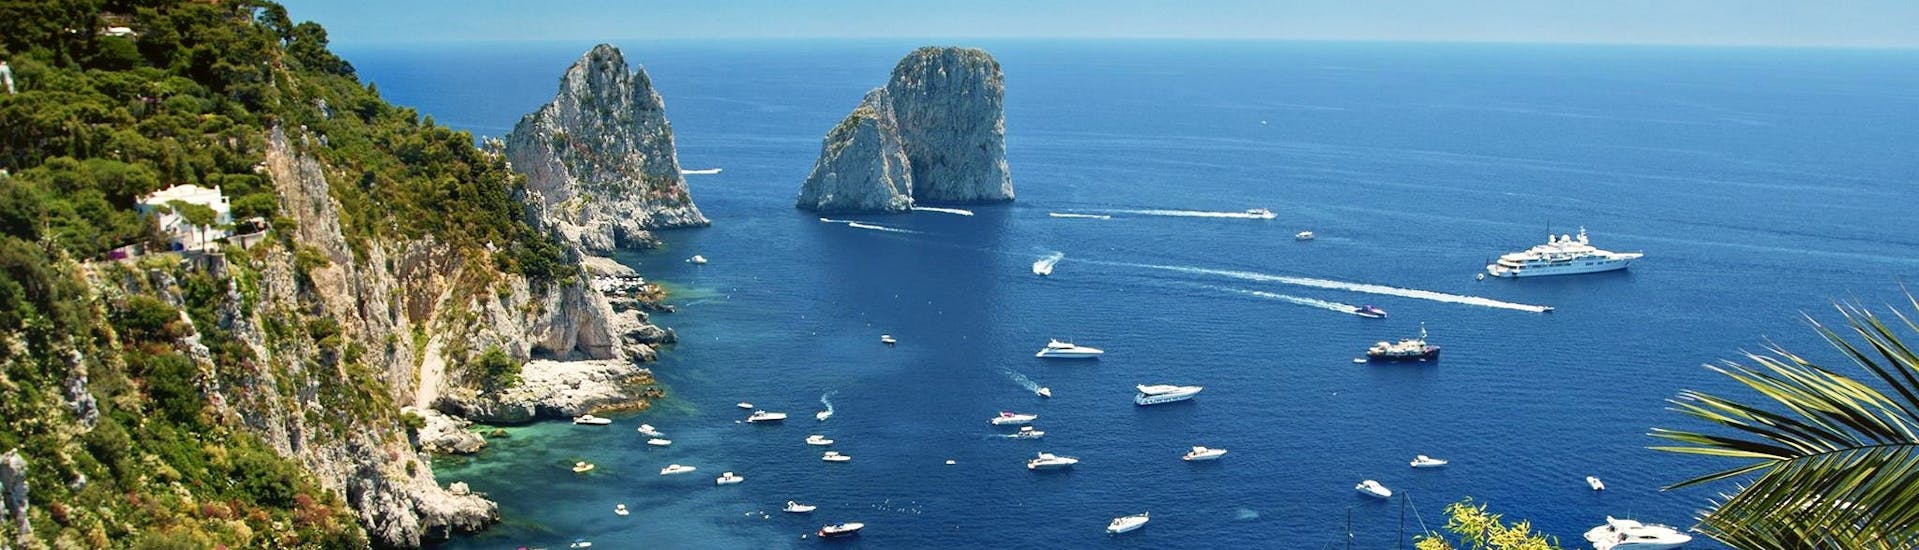 Vista aerea della costa di Capri e dei Faraglioni, dove passa il Giro in barca intorno a Capri con sosta per nuotare con HP Travel Capri.